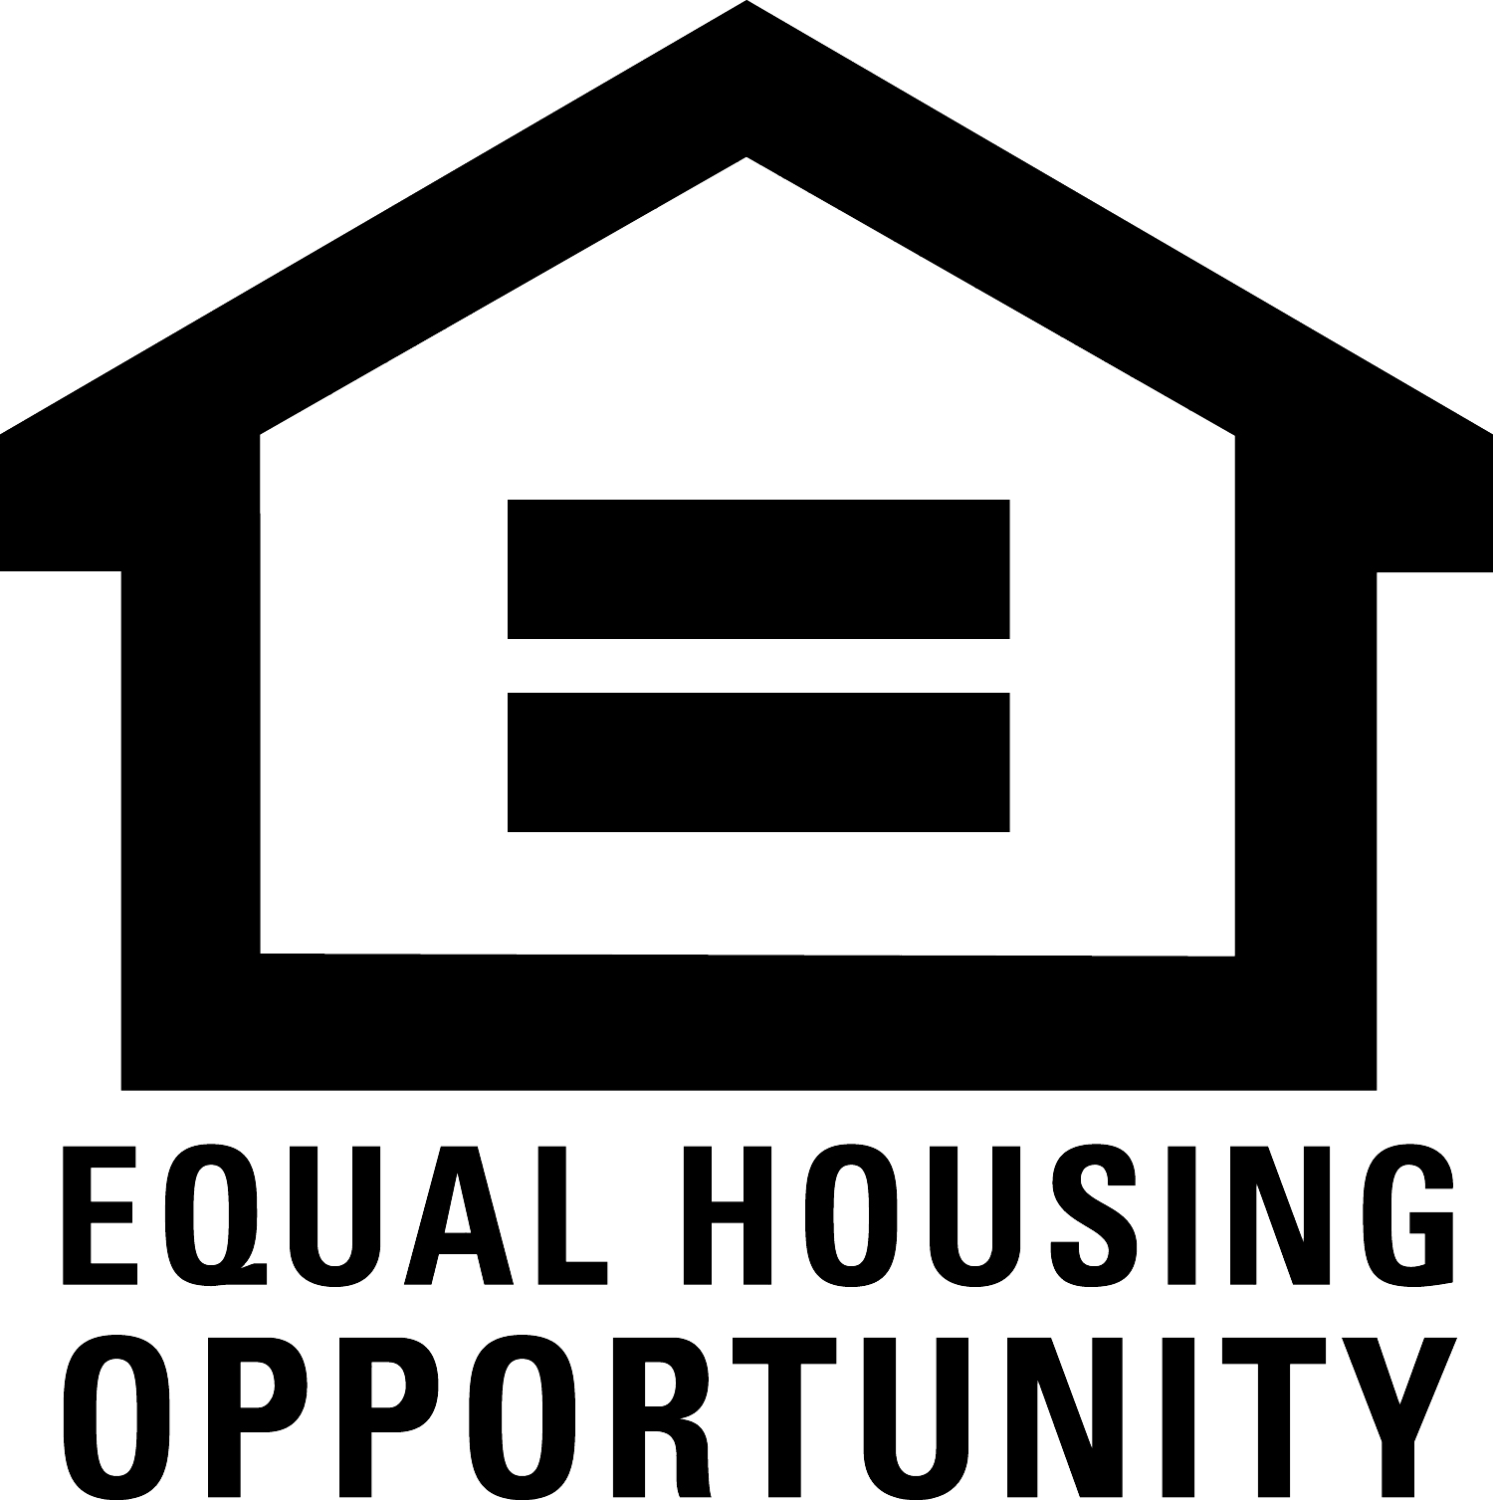 equal housing logo white